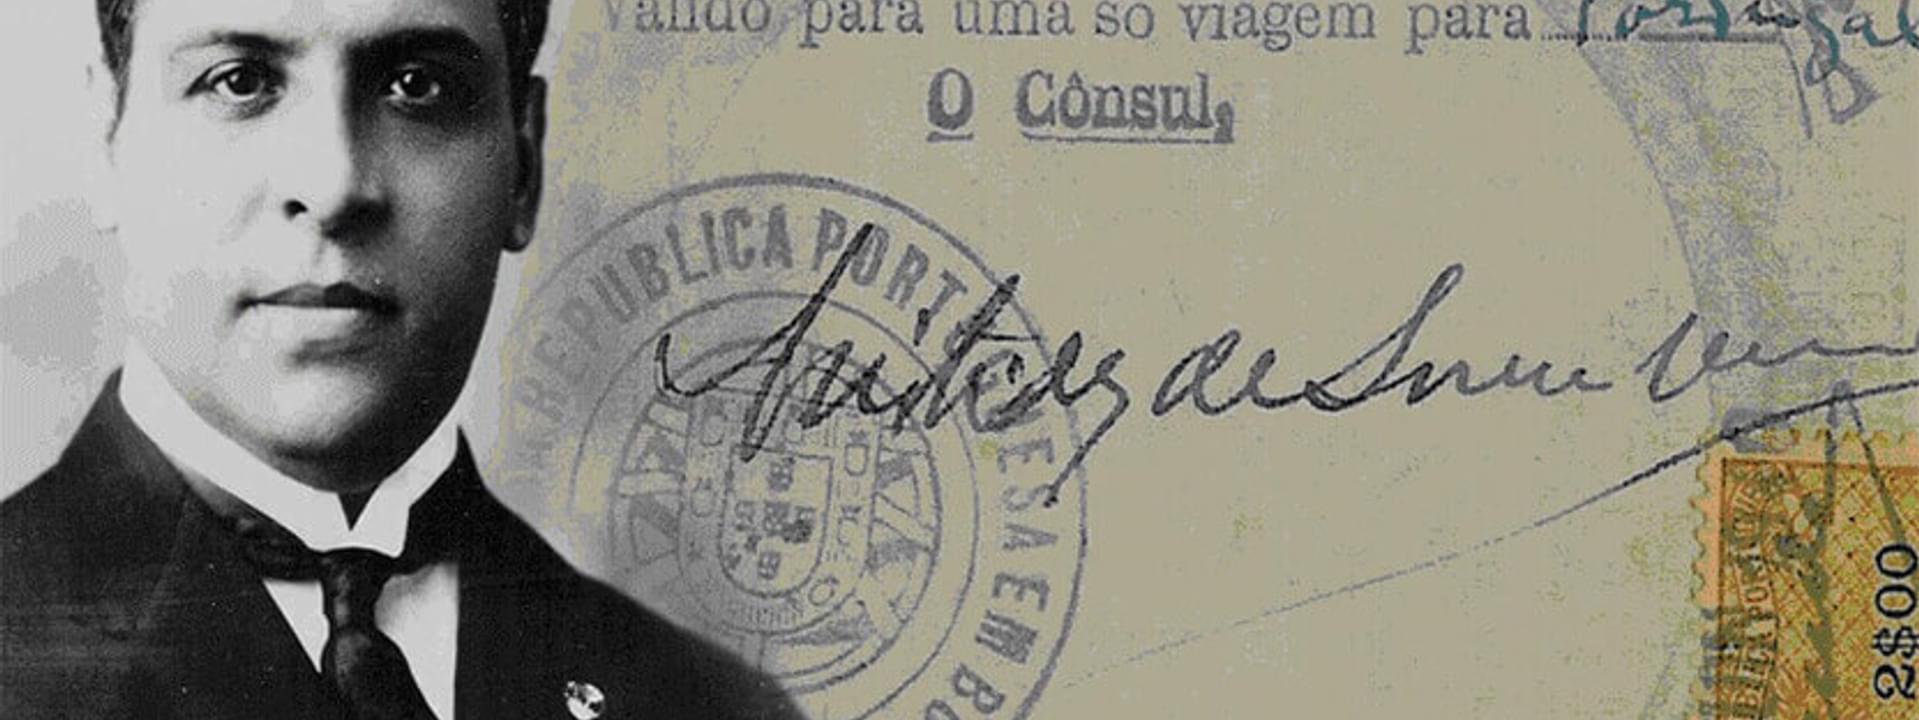 Aristides de Sousa Mendes: der ungehorsame Konsul